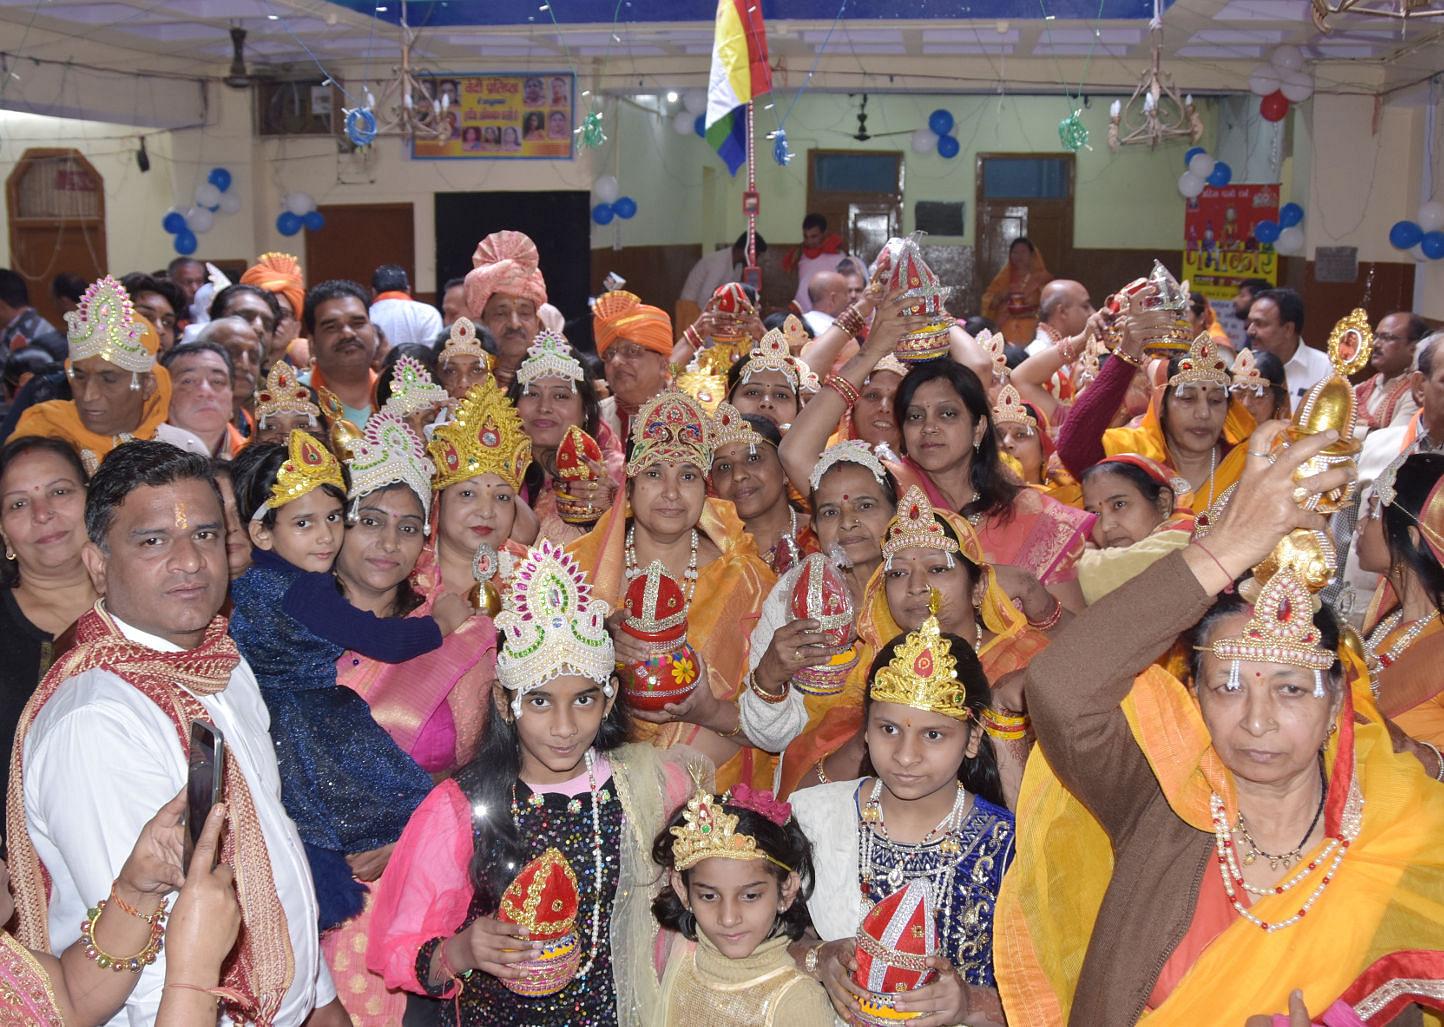 Les gens de la communauté Jain impliqués dans le Kalash Yatra du temple Jain situé à Mohalla Chaudhriyan.